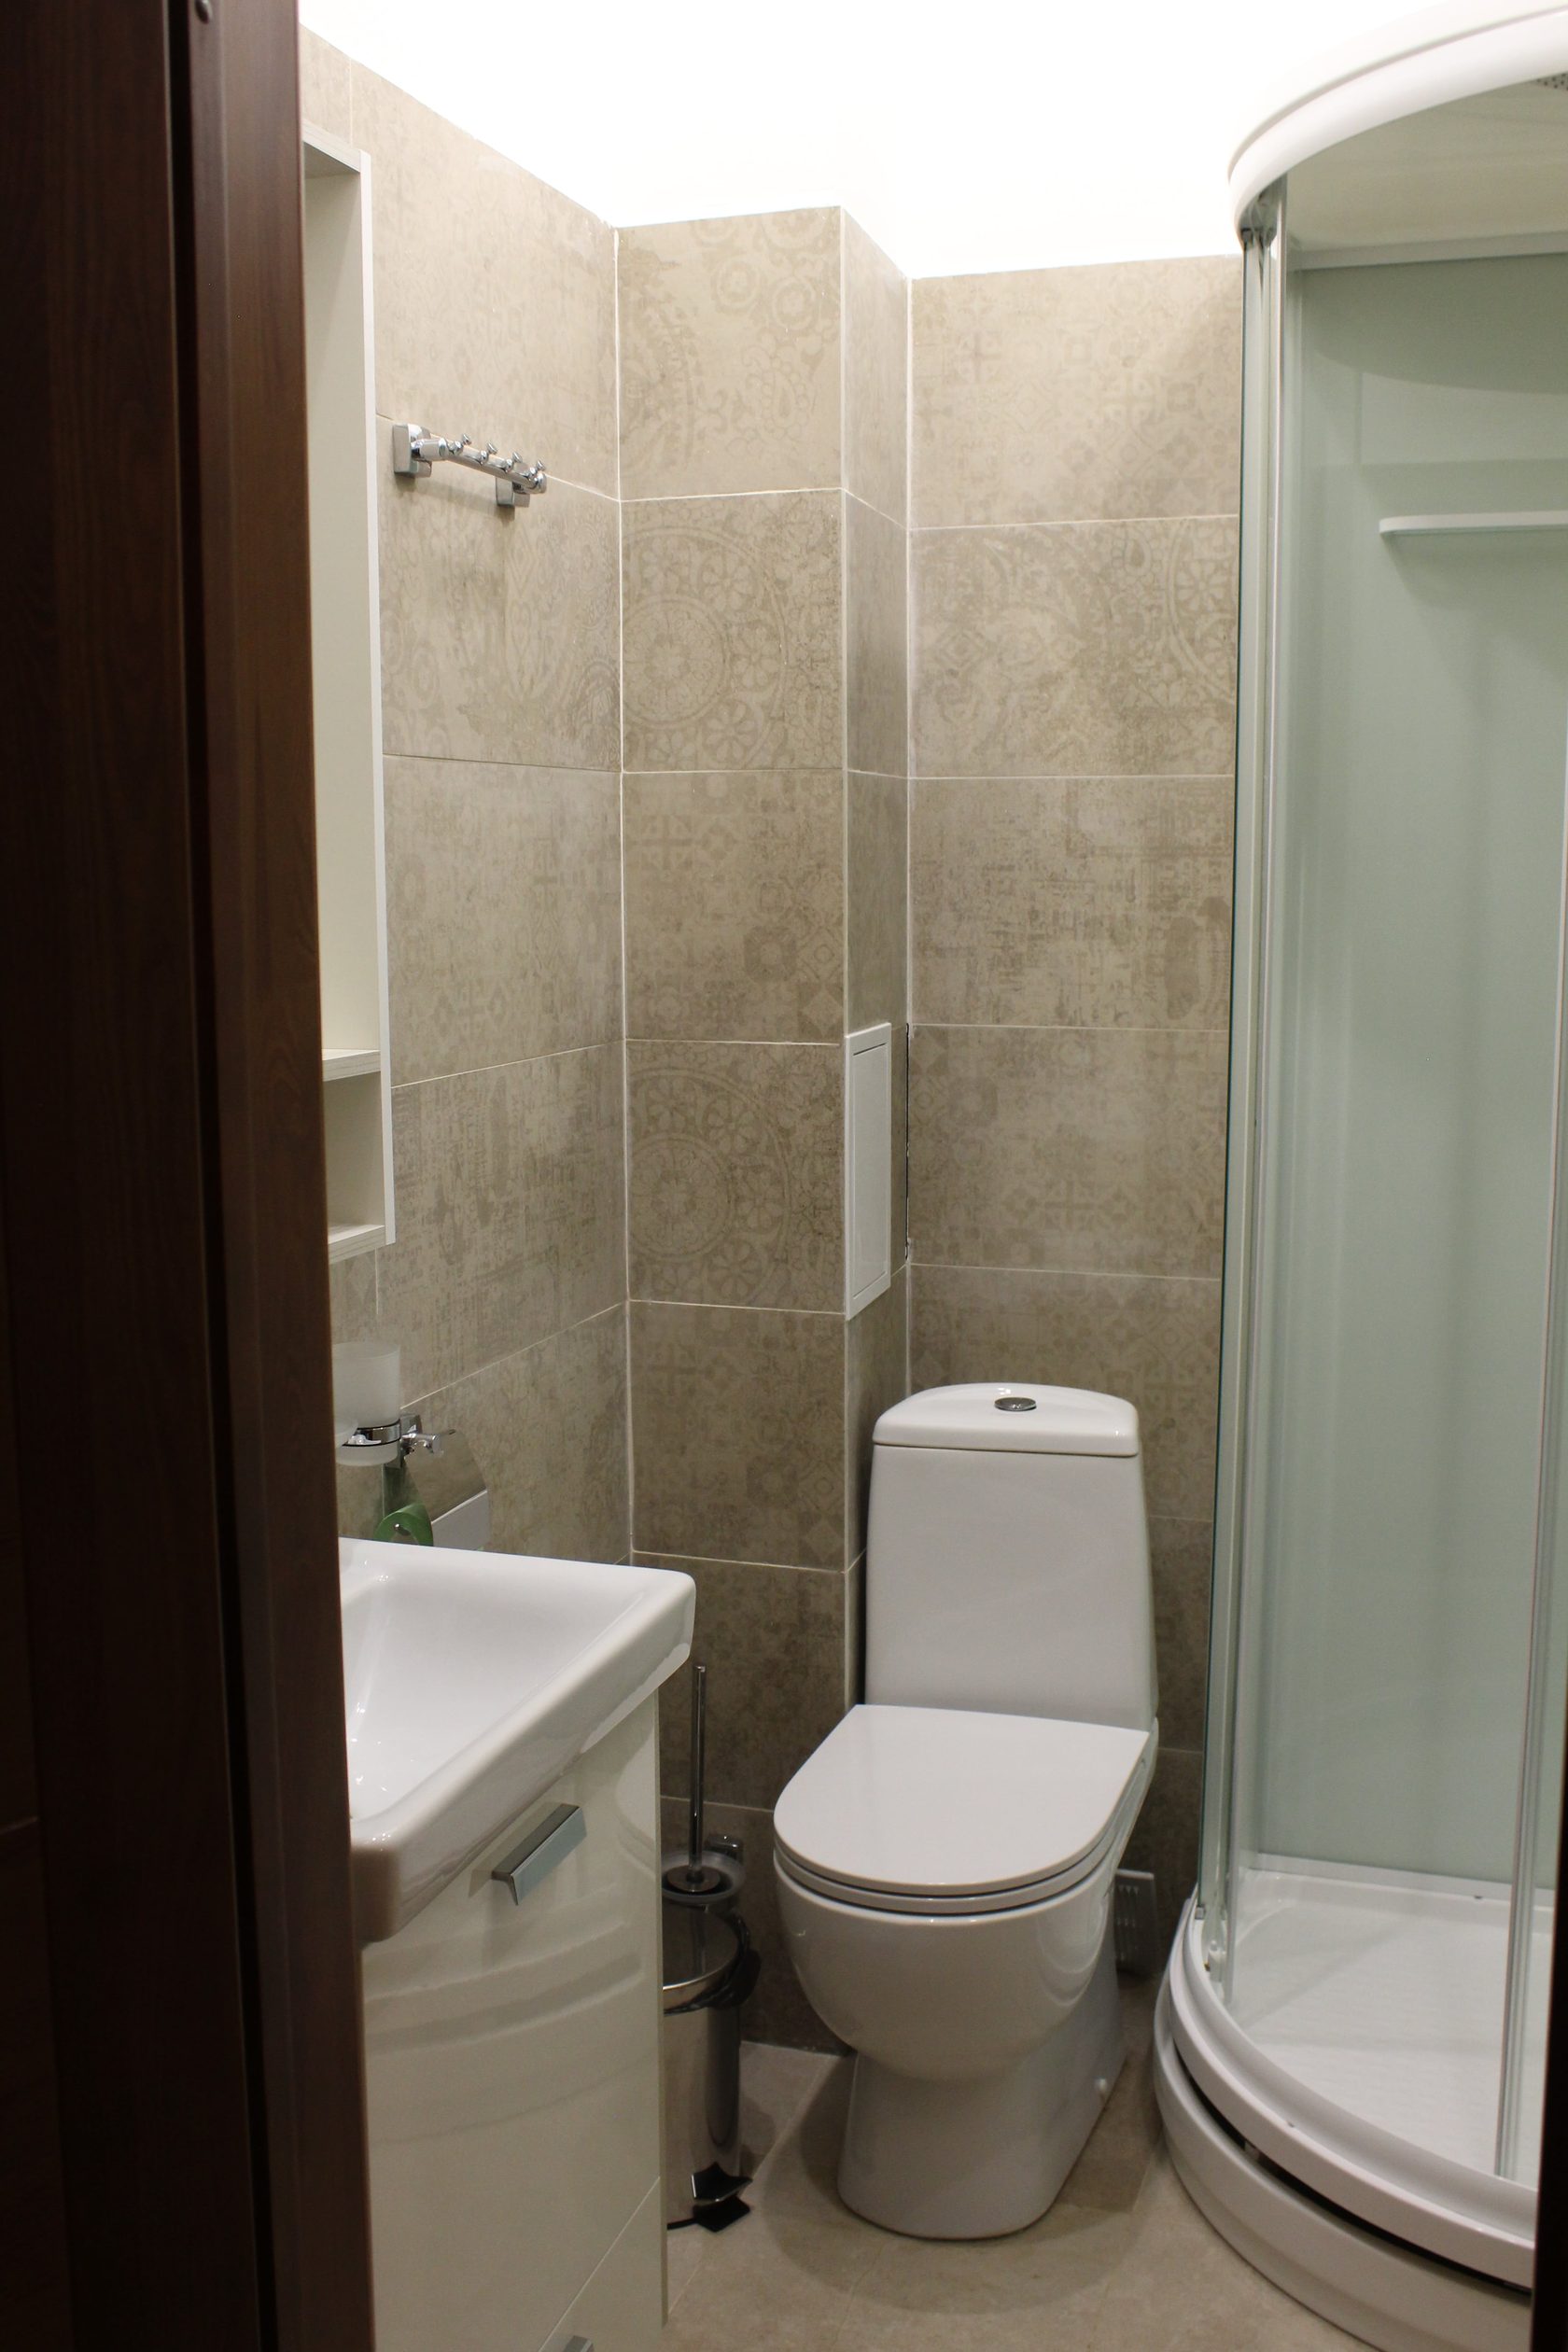 Ванная комната с большим зеркалом и душевой кабинкой